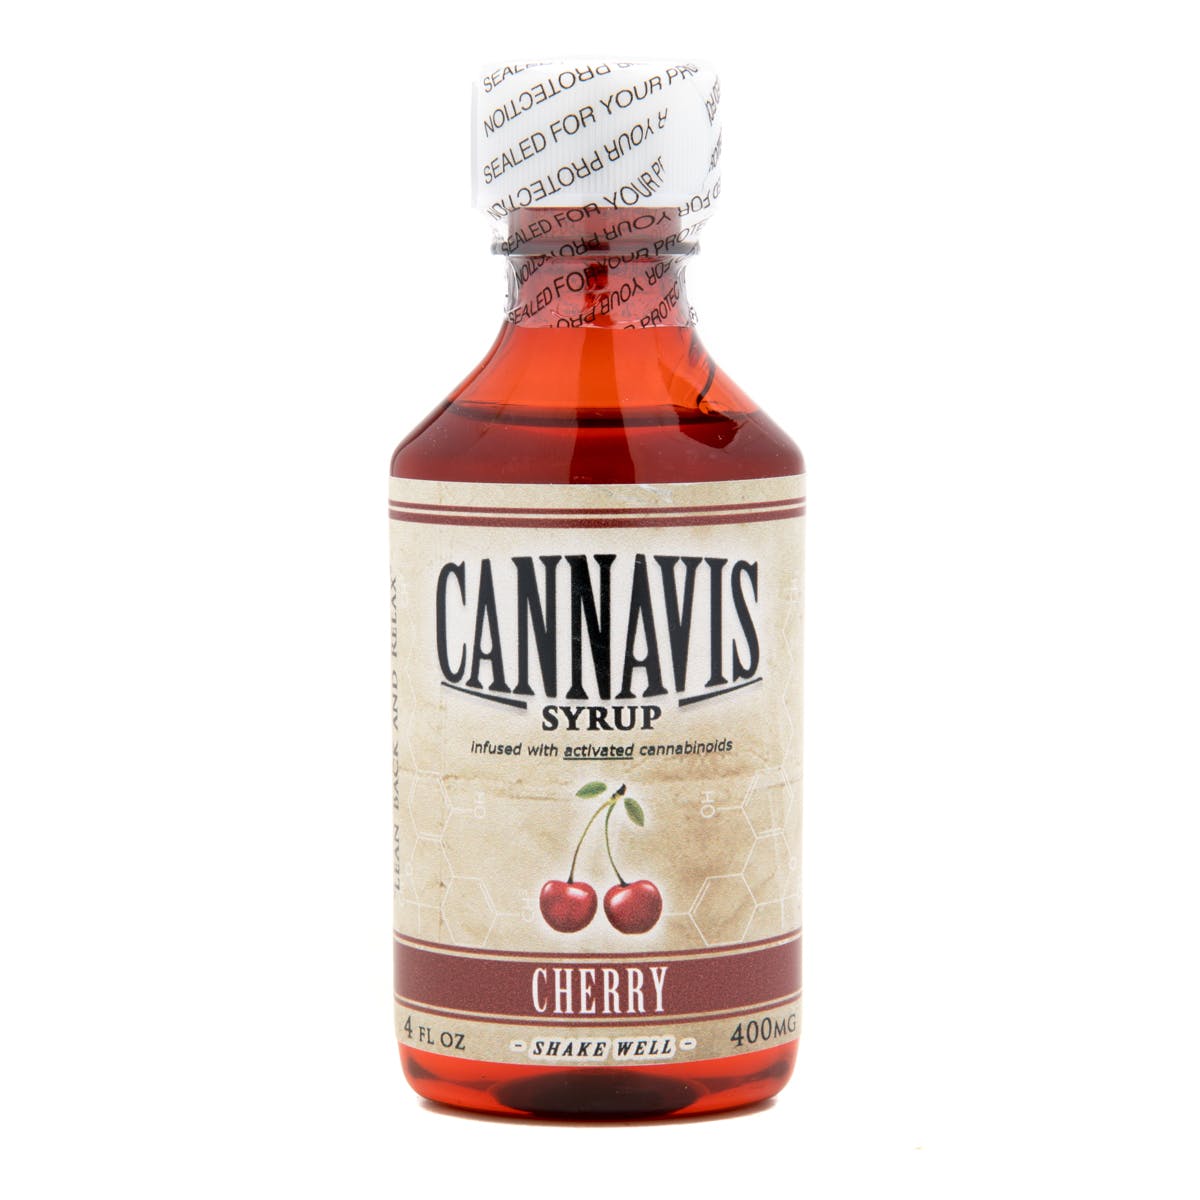 Cannavis Syrup, Cherry 400mg